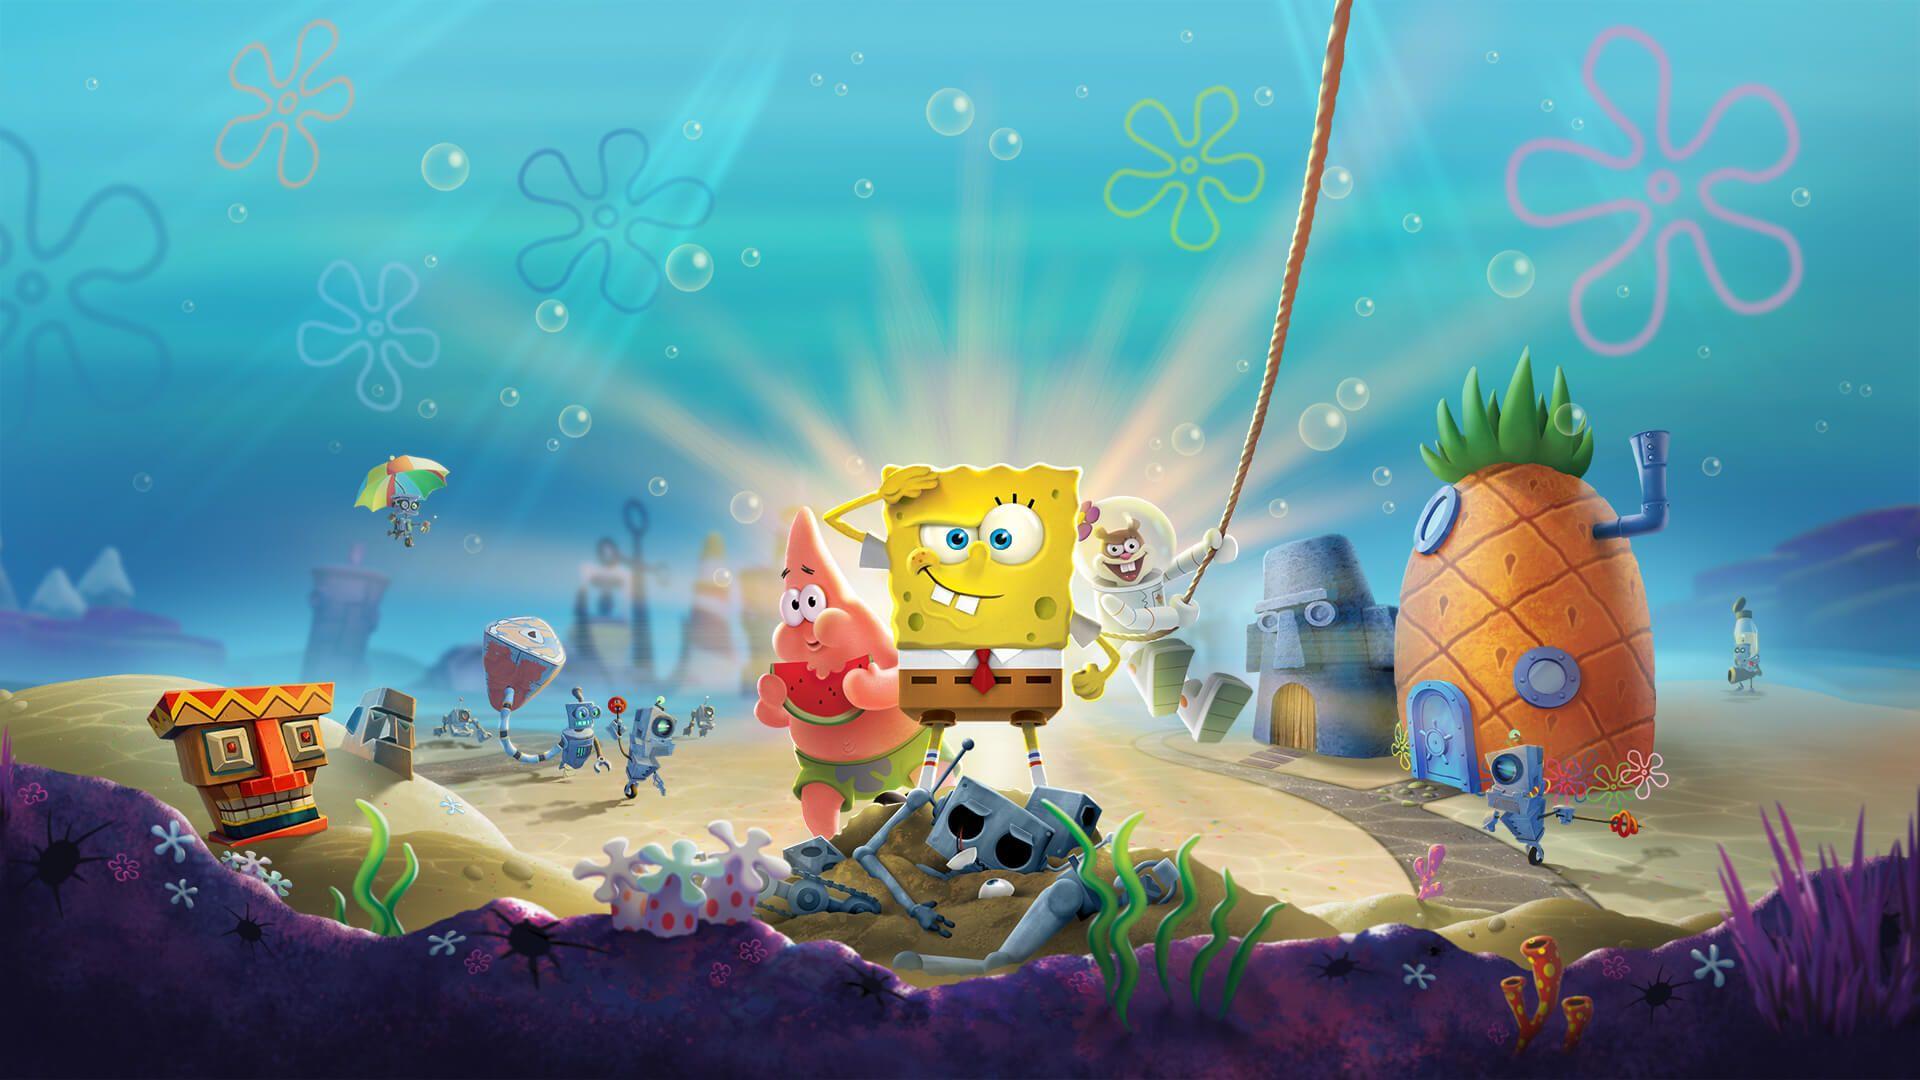 Spongebob Laptop Wallpapers Top Free Spongebob Laptop Backgrounds